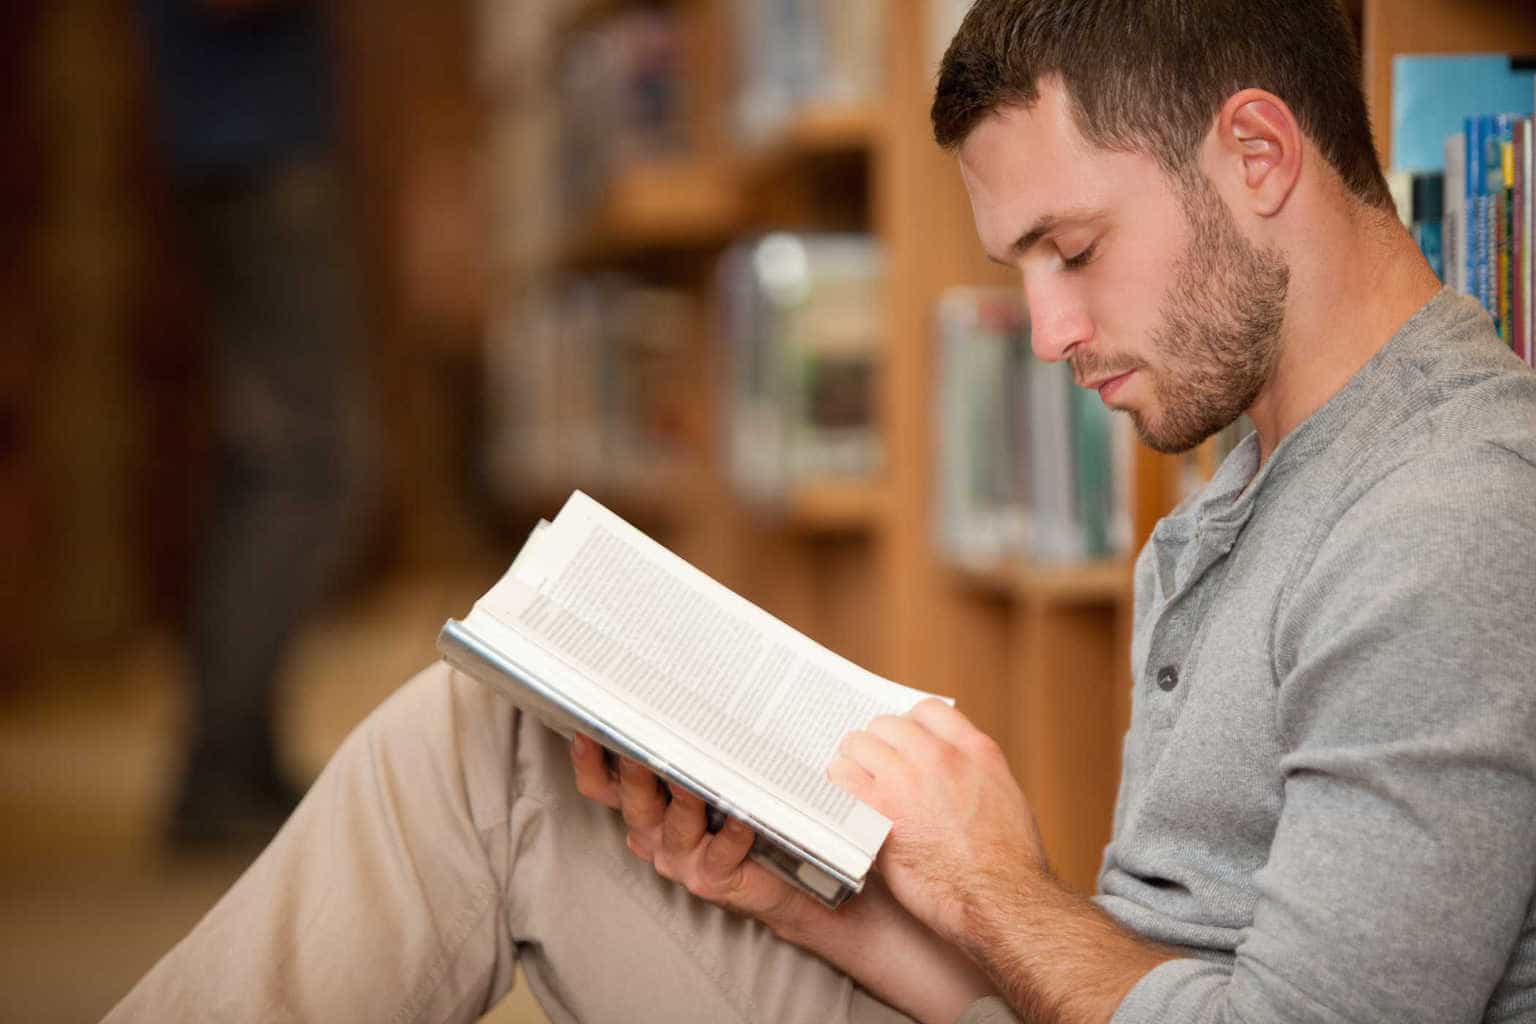 Ljudi koji vole čitati knjige žive sretnijim životom